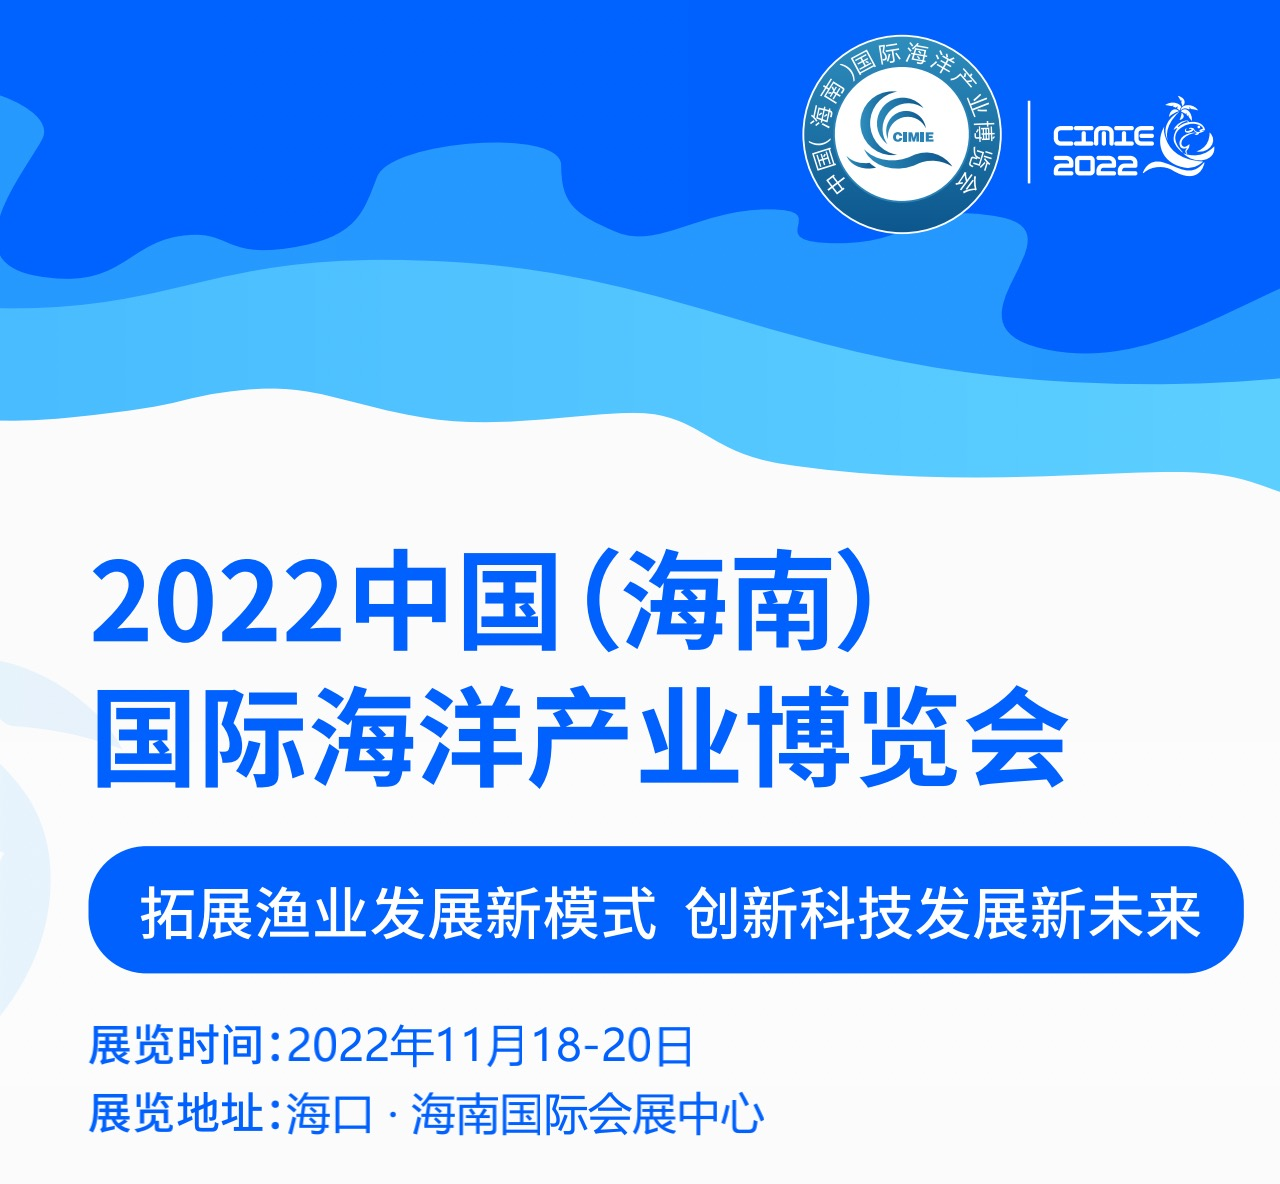 2022 Haina (Hainan) International Marine Industry Expo